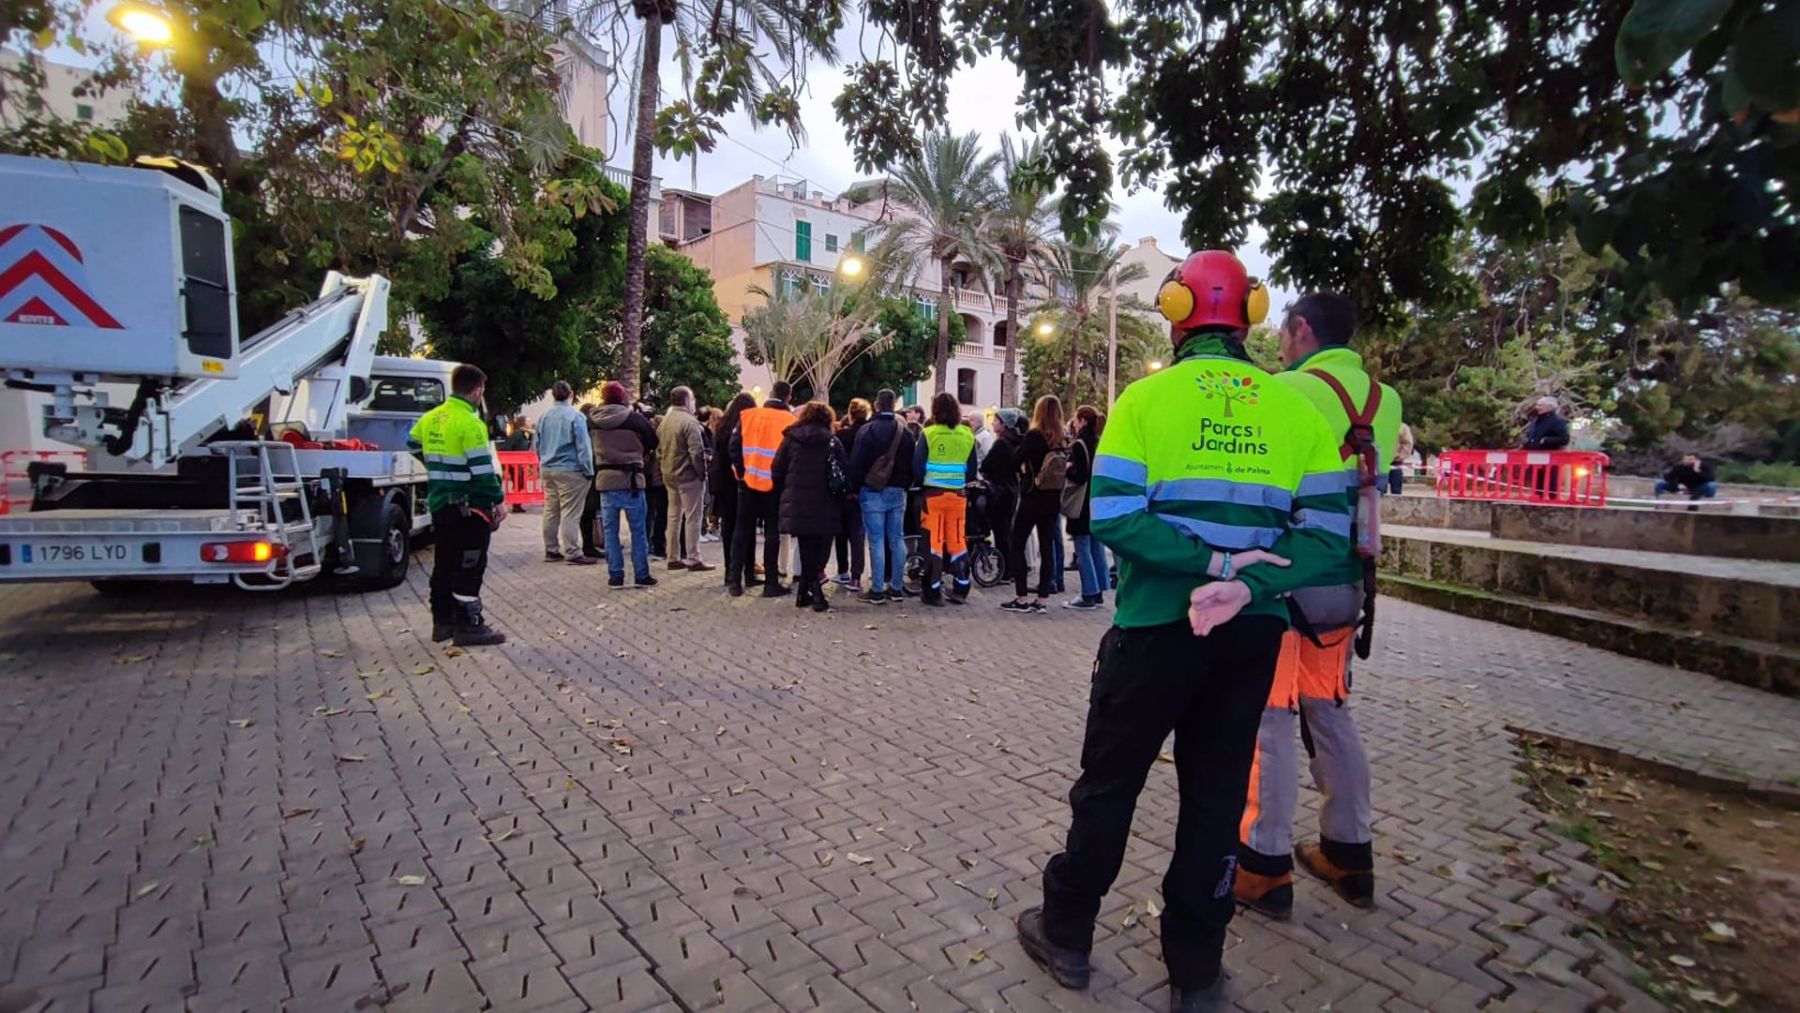 Protesta vecinal y ecologista para impedir la tala de los árboles bellasombra de la plaza Llorenç Villalonga de Palma.